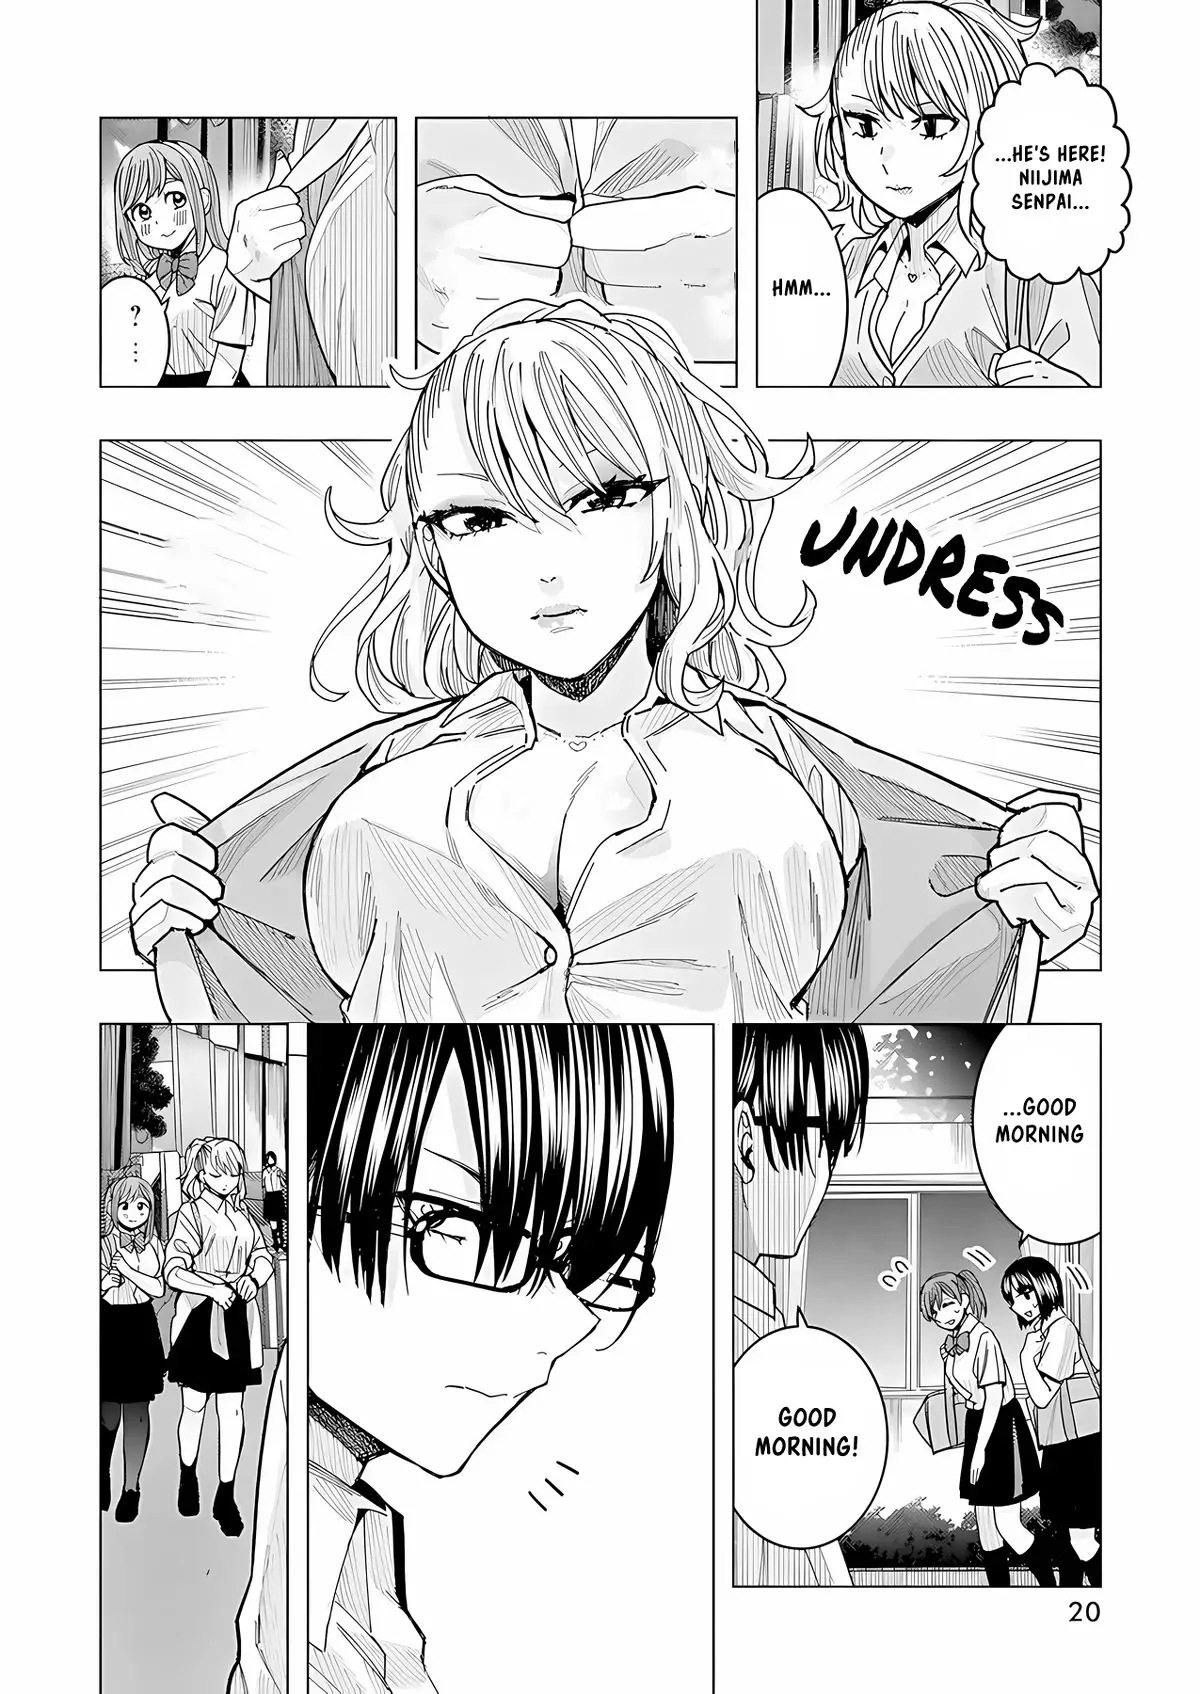 "nobukuni-San" Does She Like Me? - 25 page 8-76f7100e